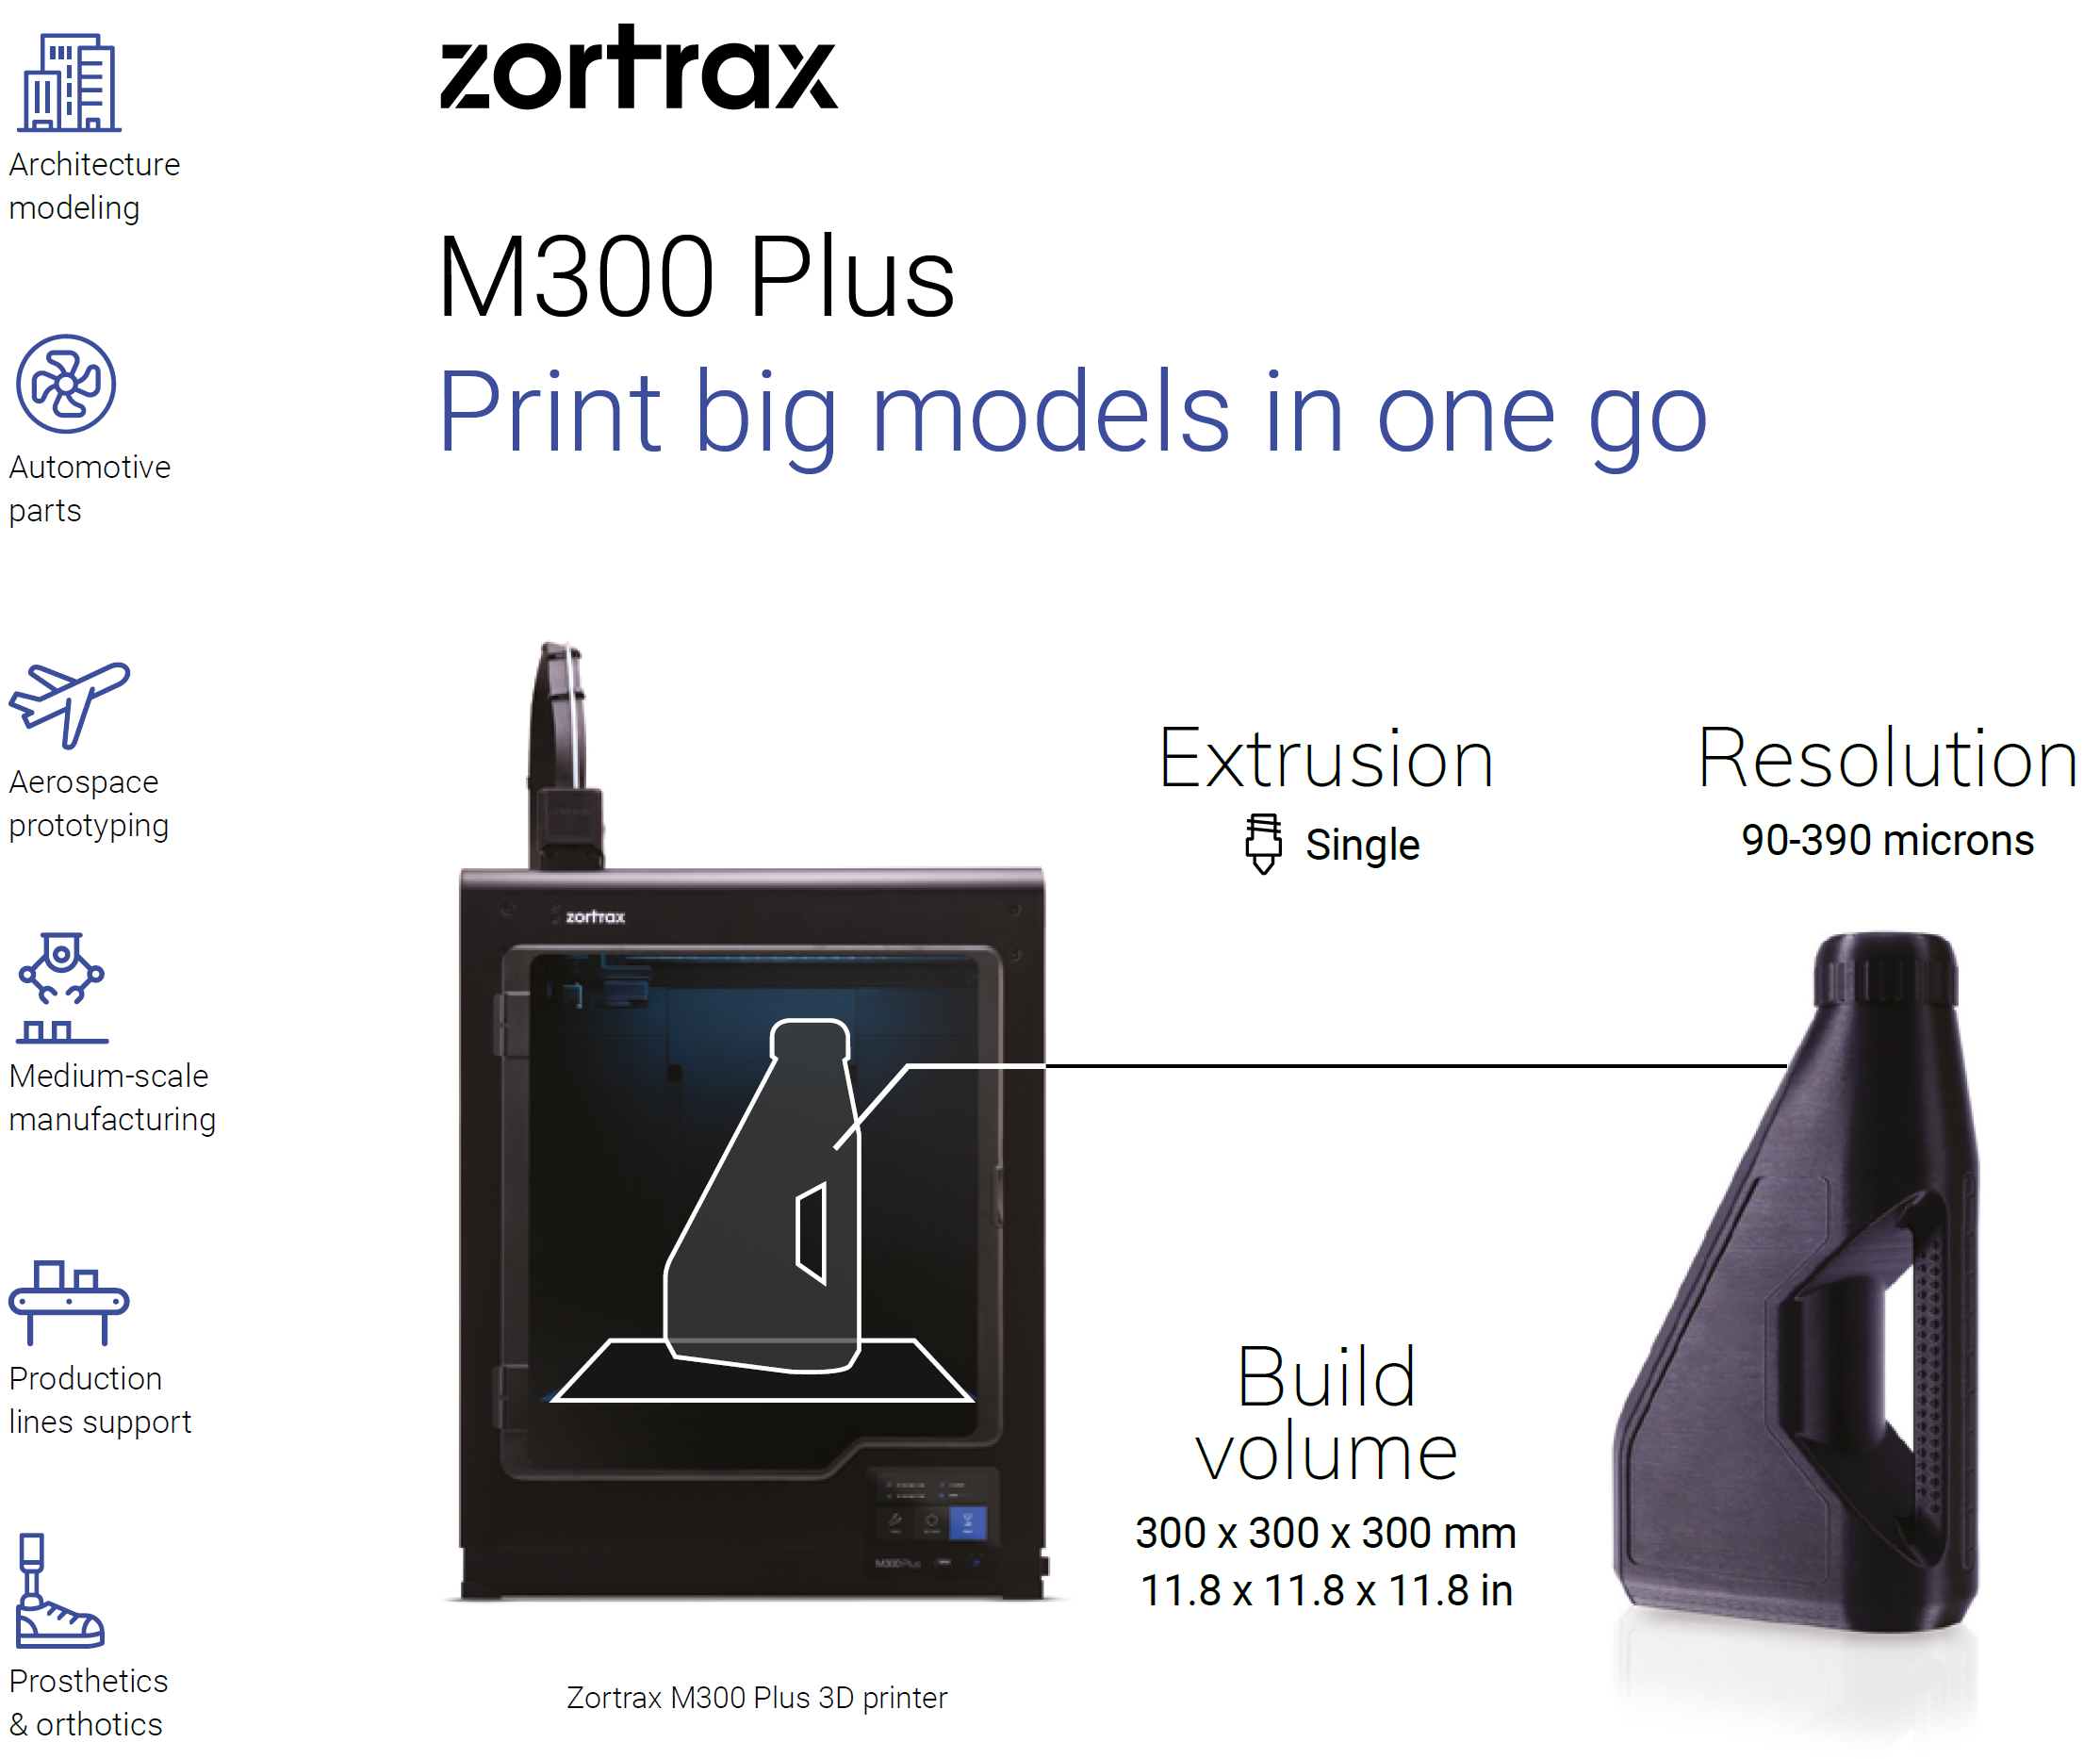 Zortrax M300 Plus Information